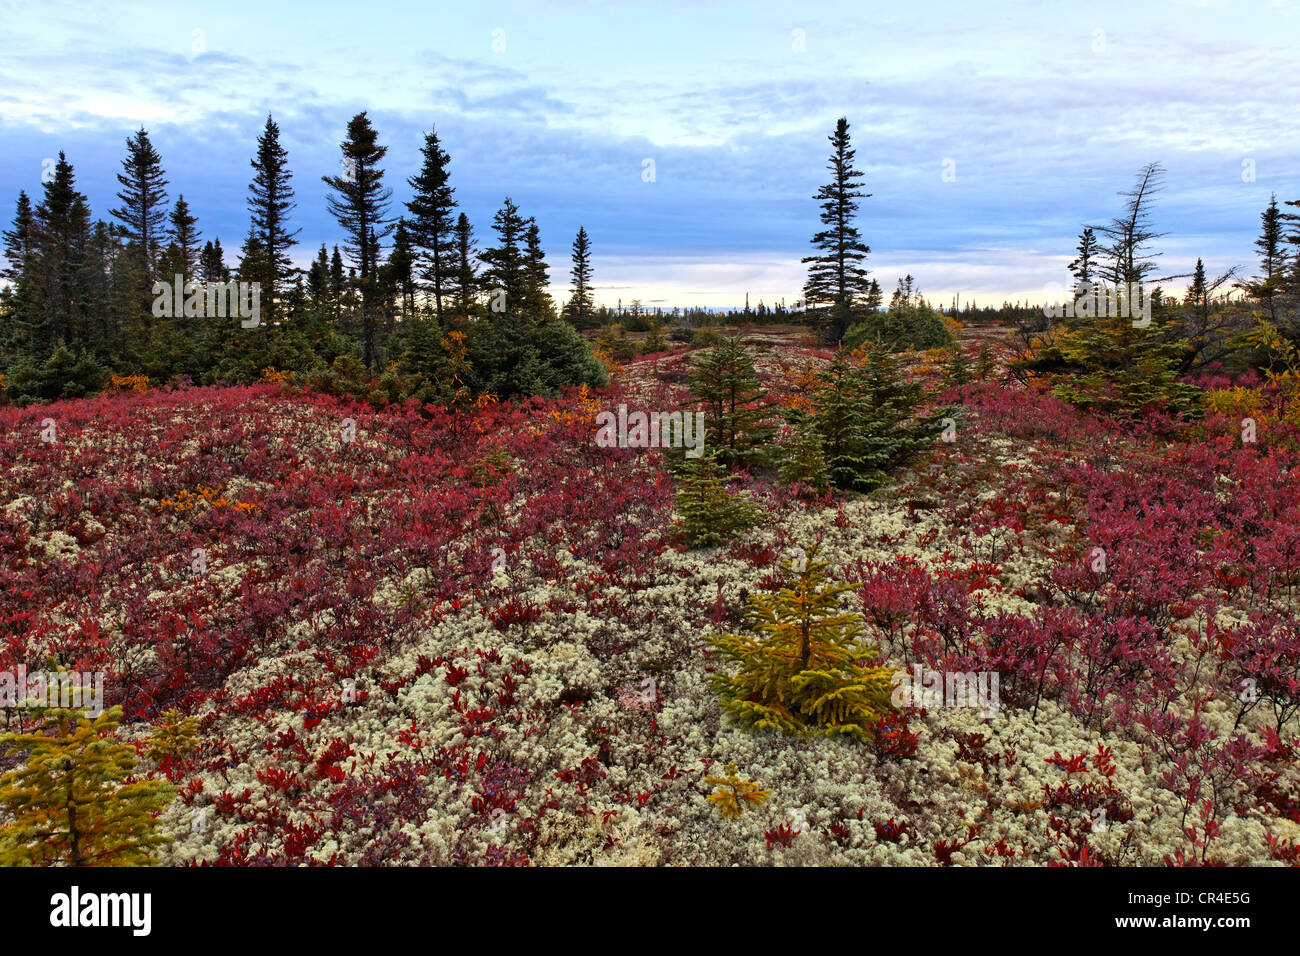 Los bosques boreales a lo largo del río San Lorenzo, Negro abeto rojo (Picea mariana) y Northern highbush blueberry (Vaccinium corymbosum) Foto de stock